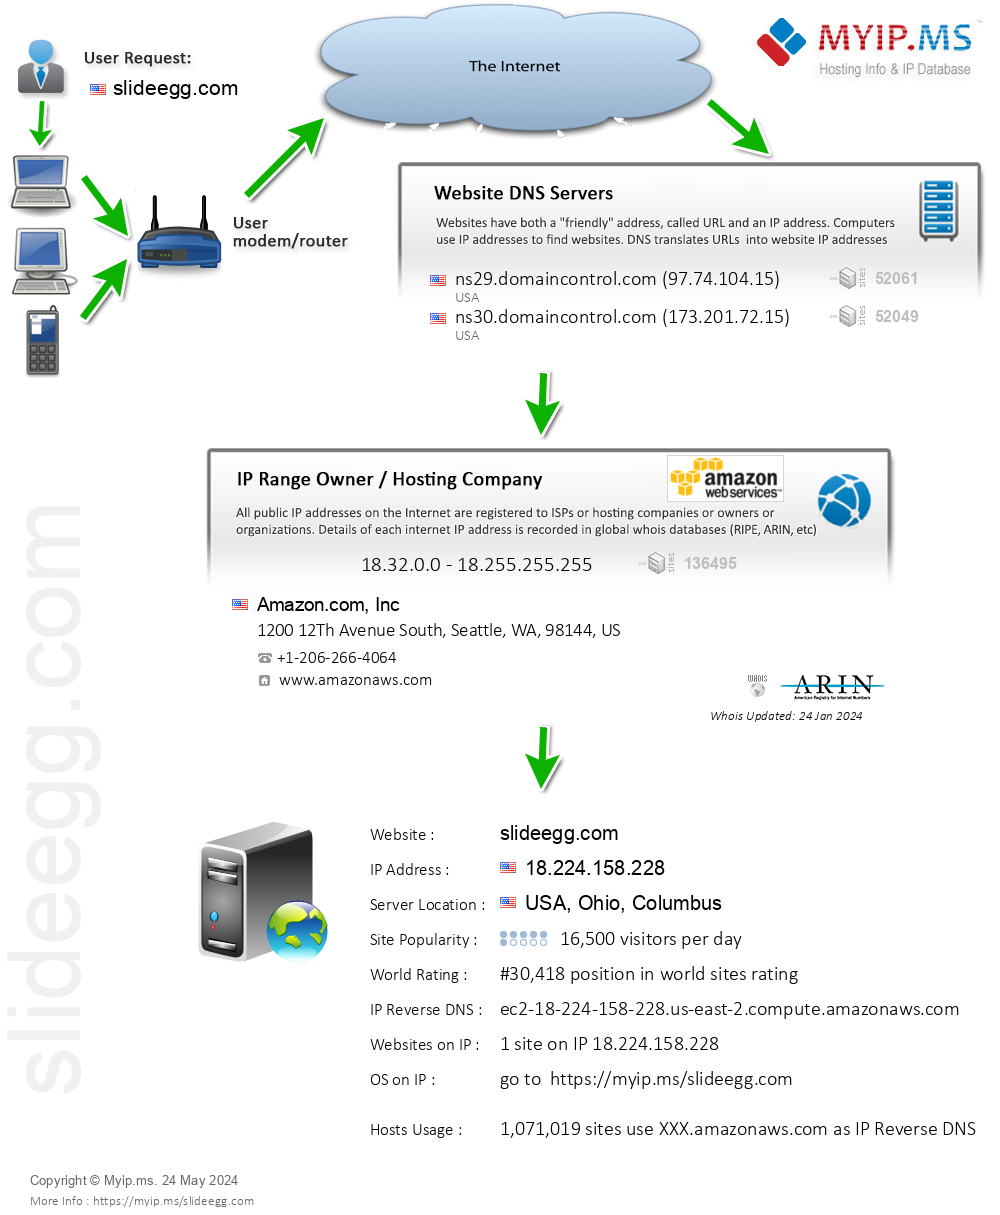 Slideegg.com - Website Hosting Visual IP Diagram